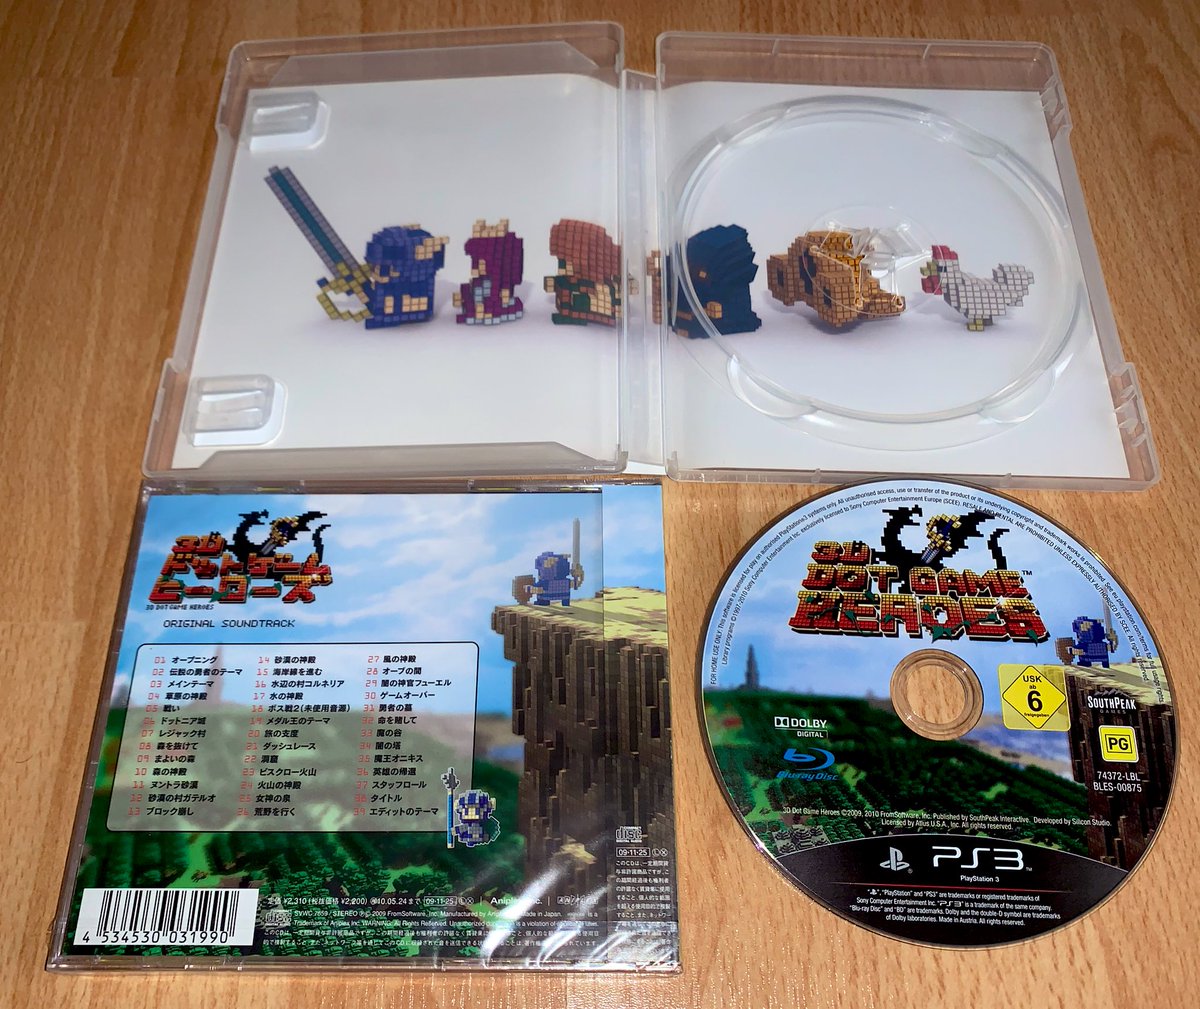 3D Dot Game Heroes (PS3, 2010) Toujours exclusif PS3 à l’aube de ses 10 ans, ce petit bijou est peu courant, surtout avec ses notice (une VRAIE !) et jaquette françaises, même si le jeu est en anglais.J’en ai gardé un second exemplaire neuf, ainsi que le CD de sa super OST.